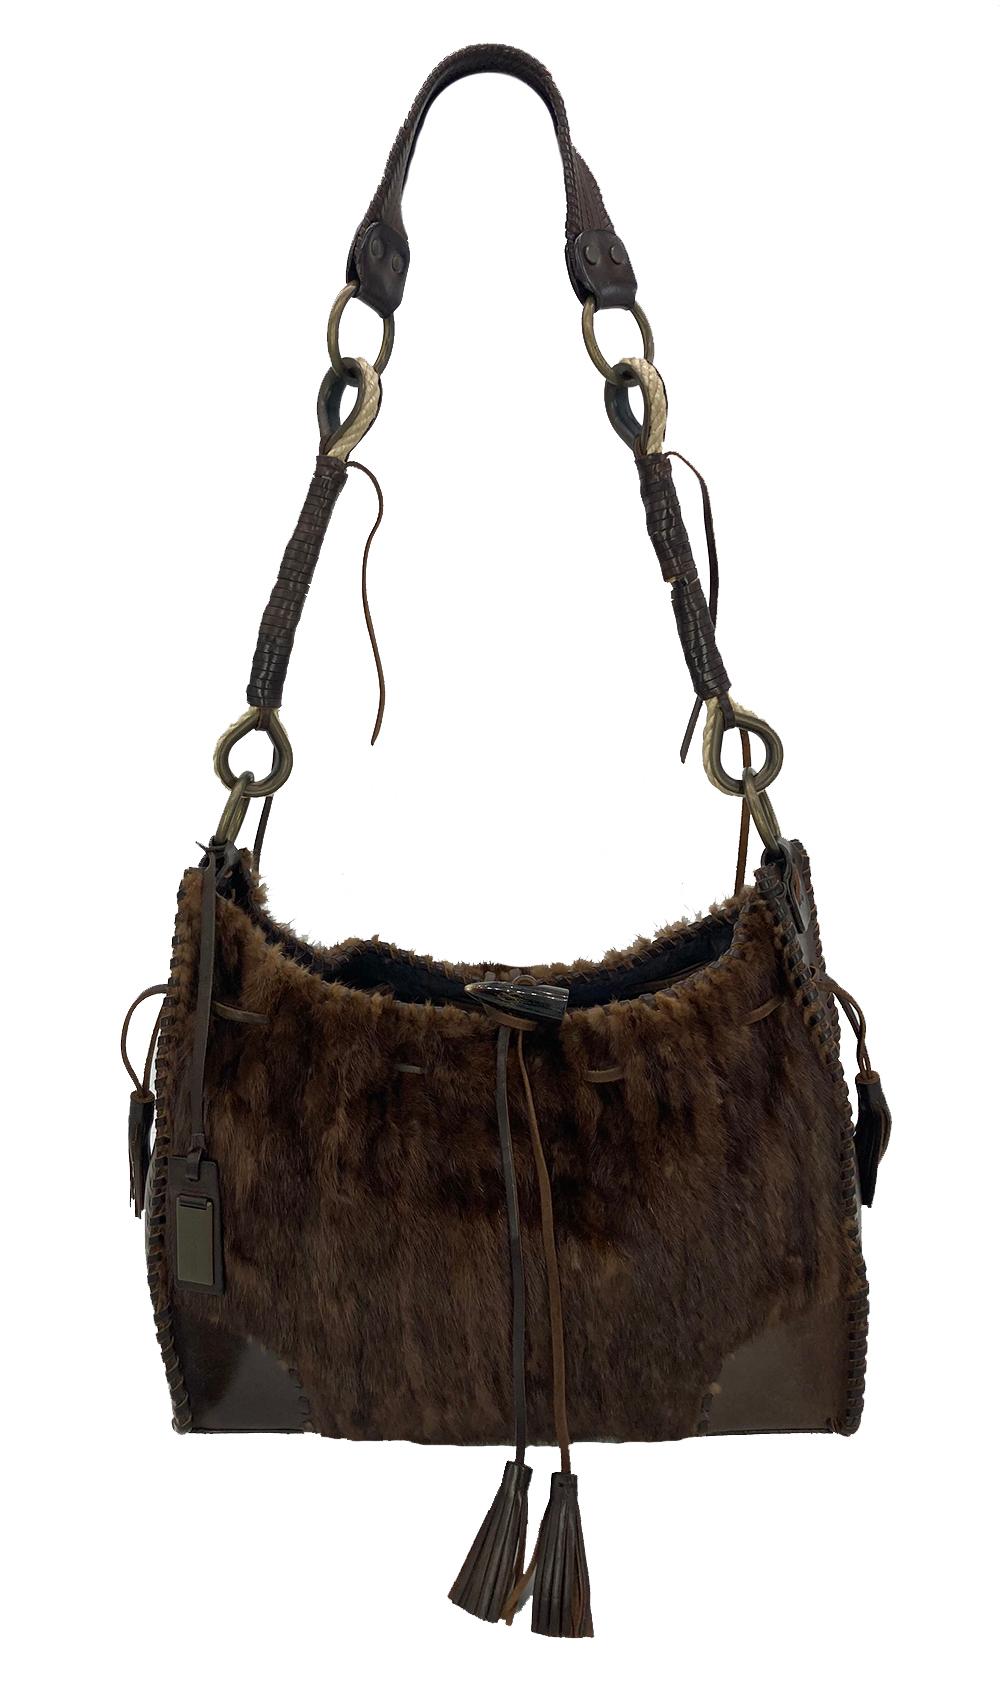 Ce sac à bandoulière exotique Dolce & Gabbana est en excellent état. L'extérieur est composé d'un magnifique cuir marron garni de fourrure de vison marron assortie, d'une quincaillerie en bronze antique et de détails en cuir tressé. La fermeture à